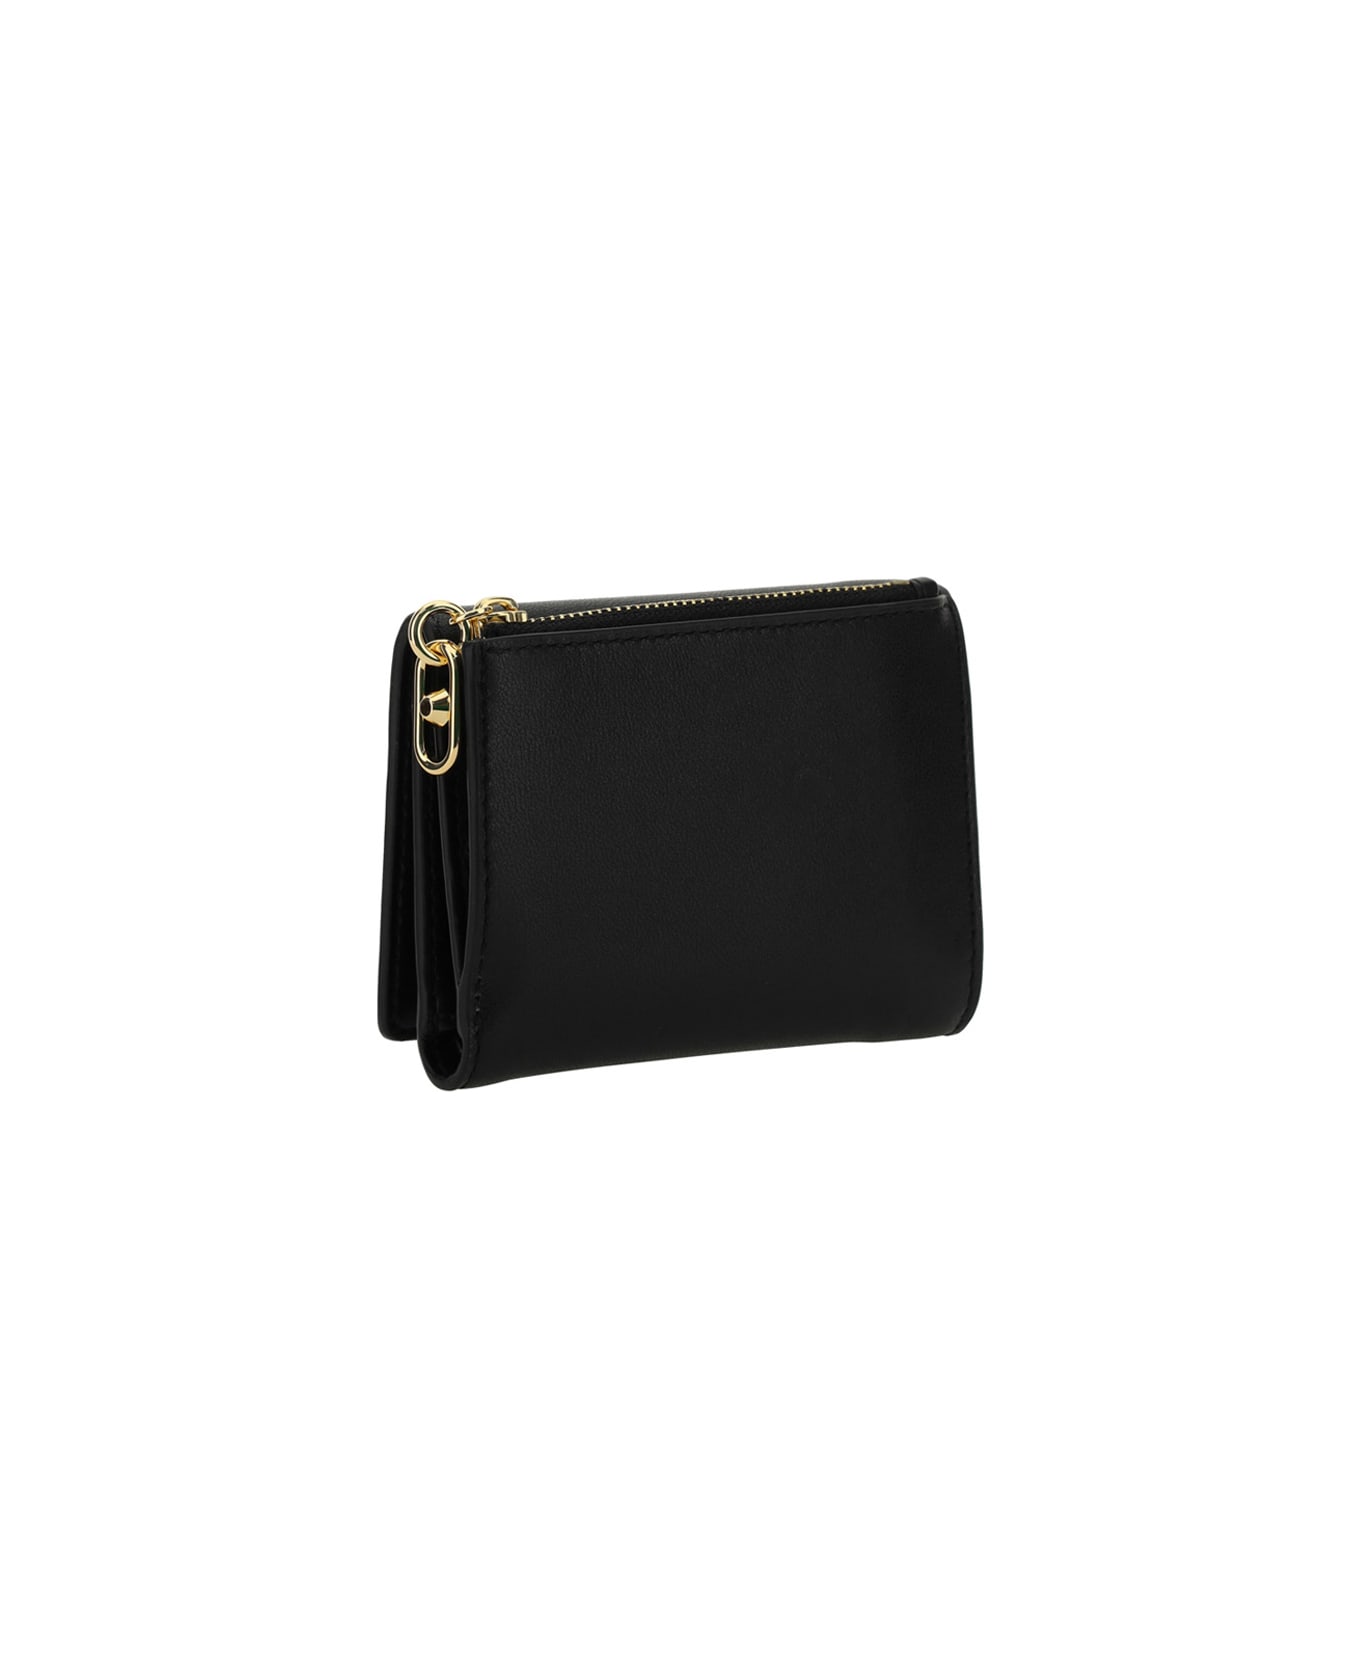 MICHAEL Michael Kors Parker Leather Wallet - Black 財布